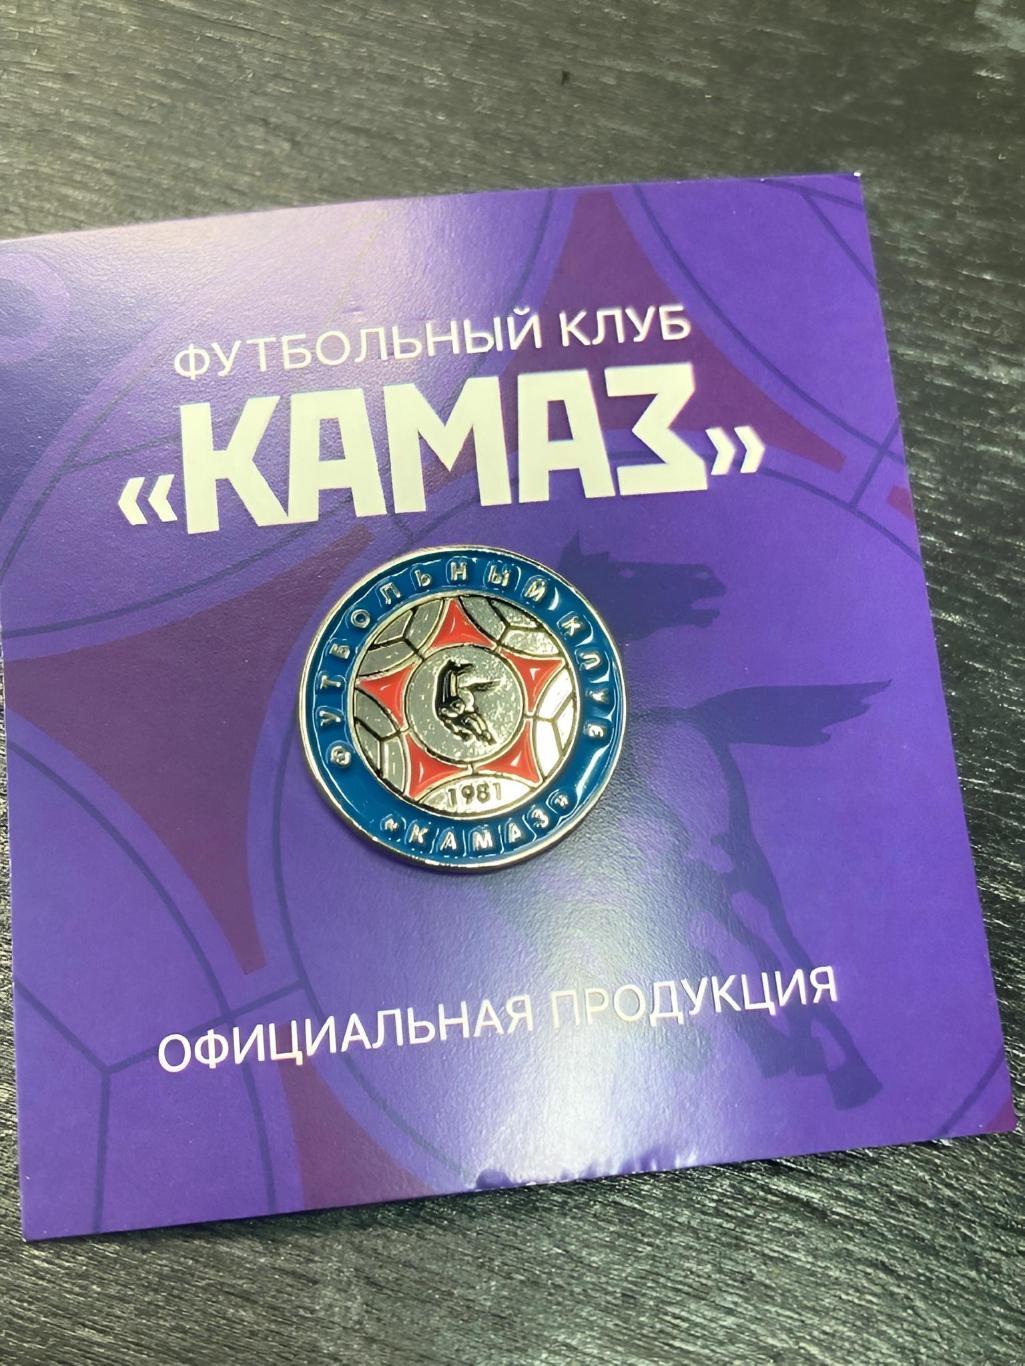 Официальный значок ФК КАМАЗ г. Набережные Челны 2